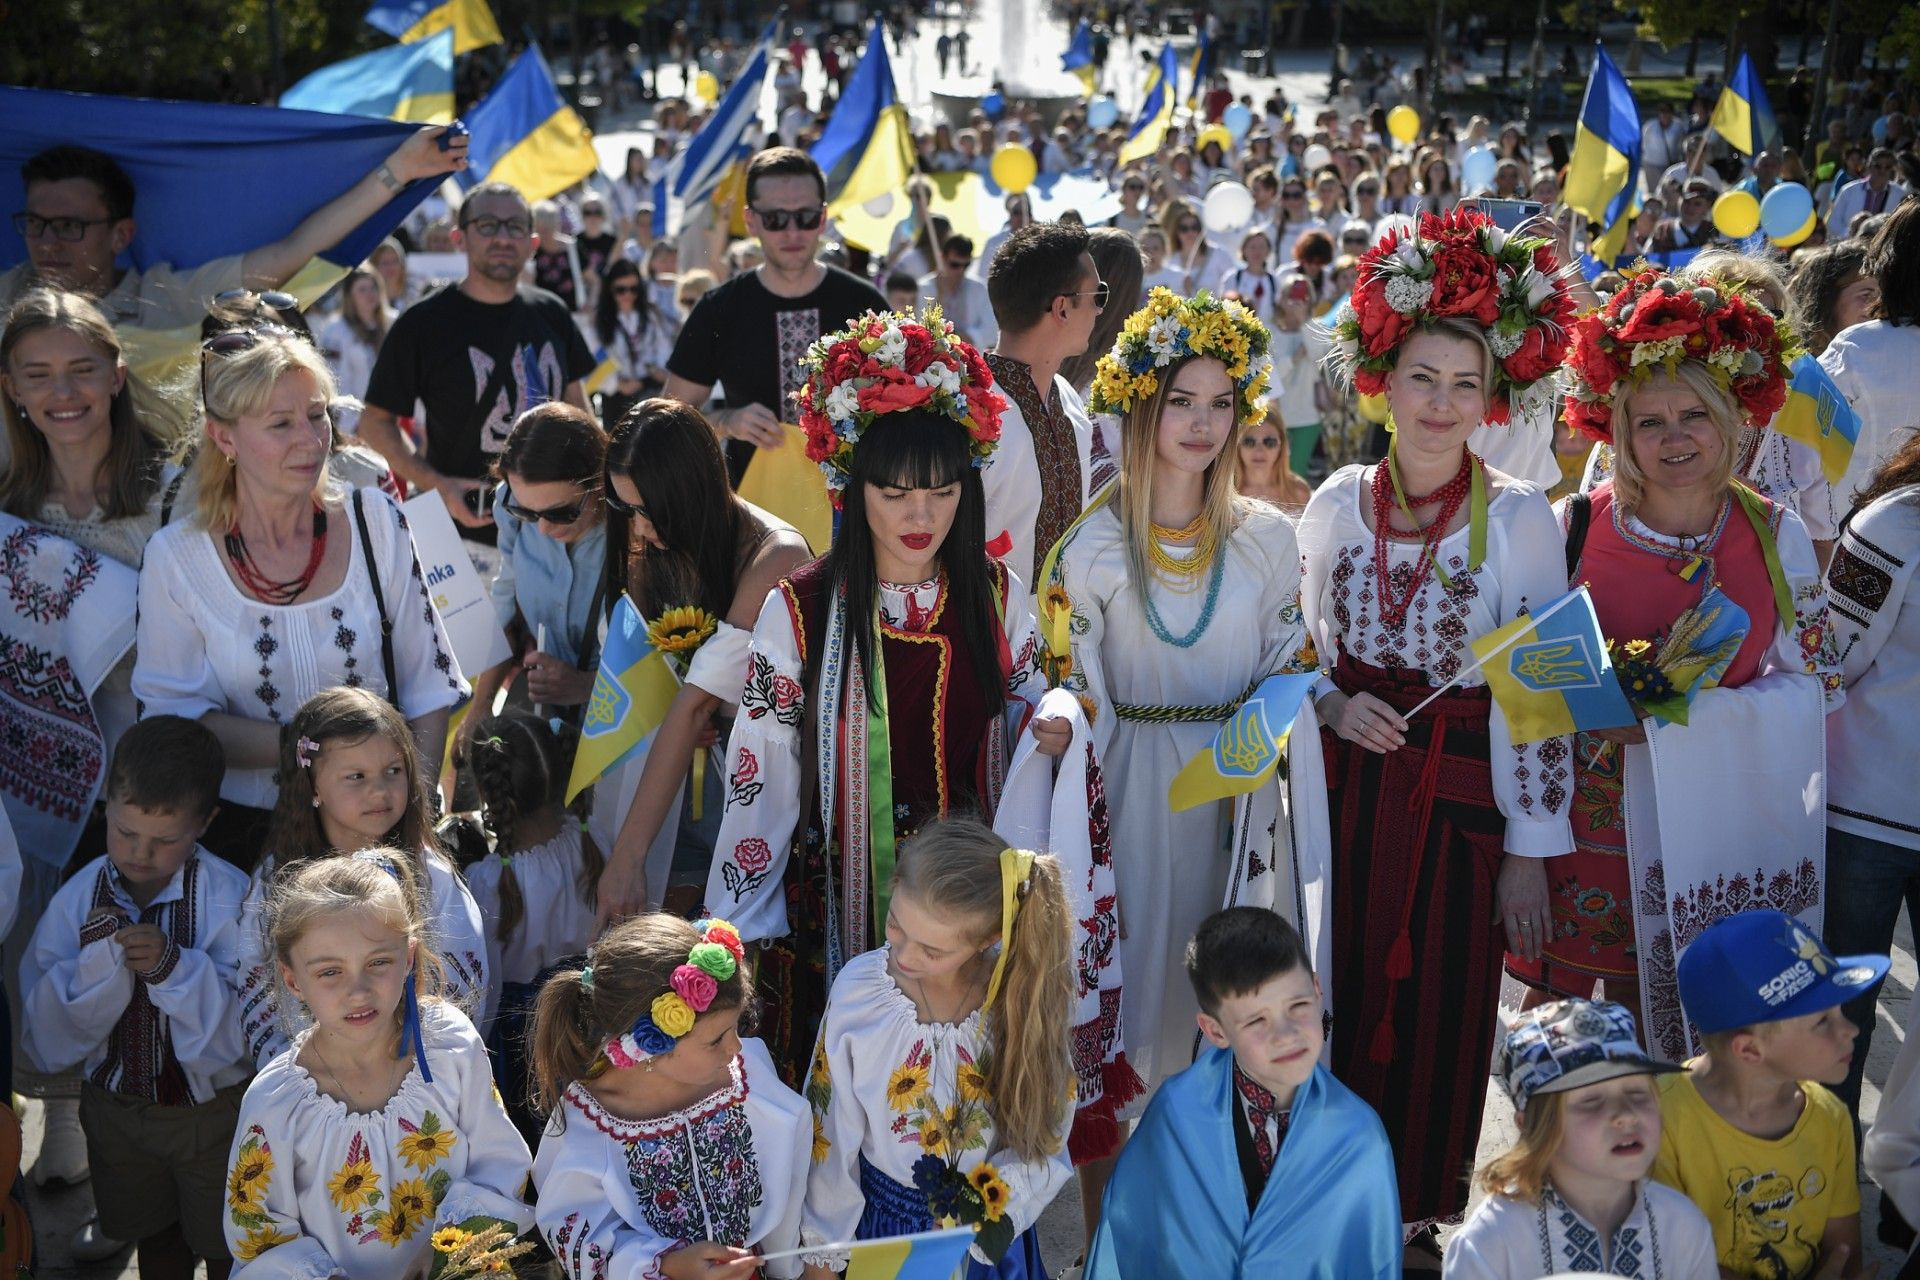 اللاجئون الأوكرانيون يتظاهرون في أثينا بالقمصان التقليدية رمز الهوية الوطنية (صور)